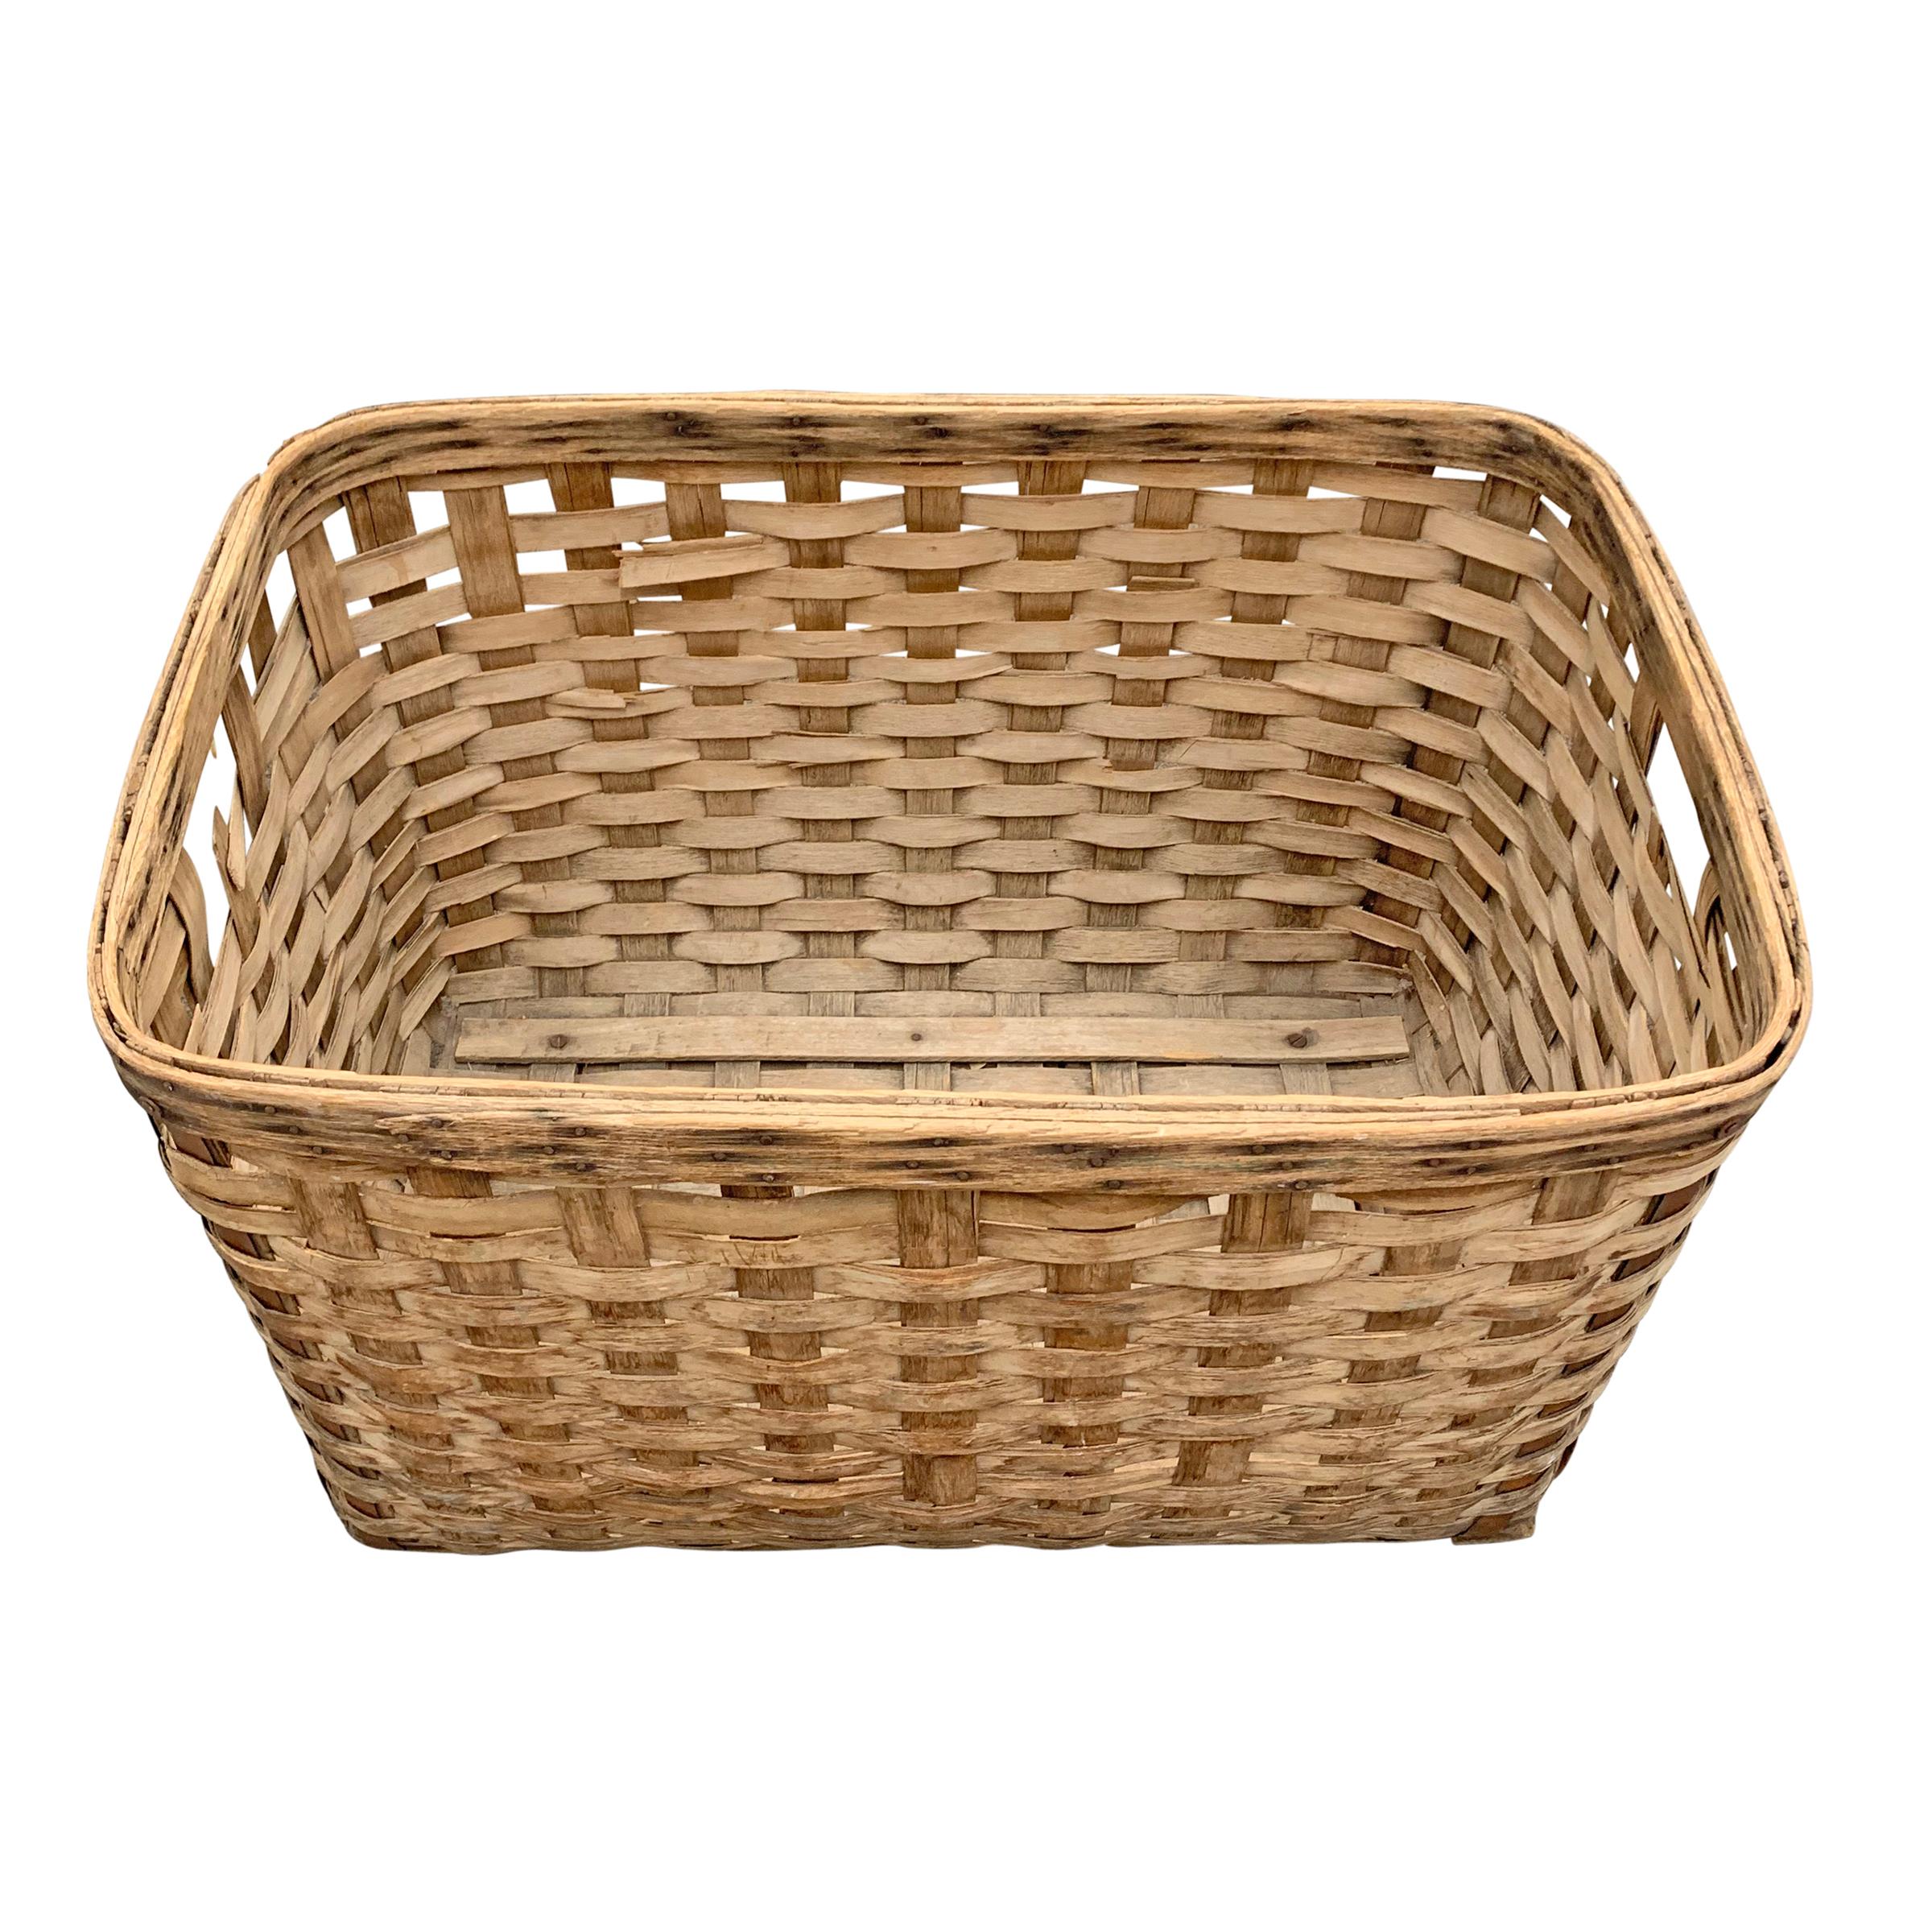 Rustic 19th Century American Oak Splint Basket